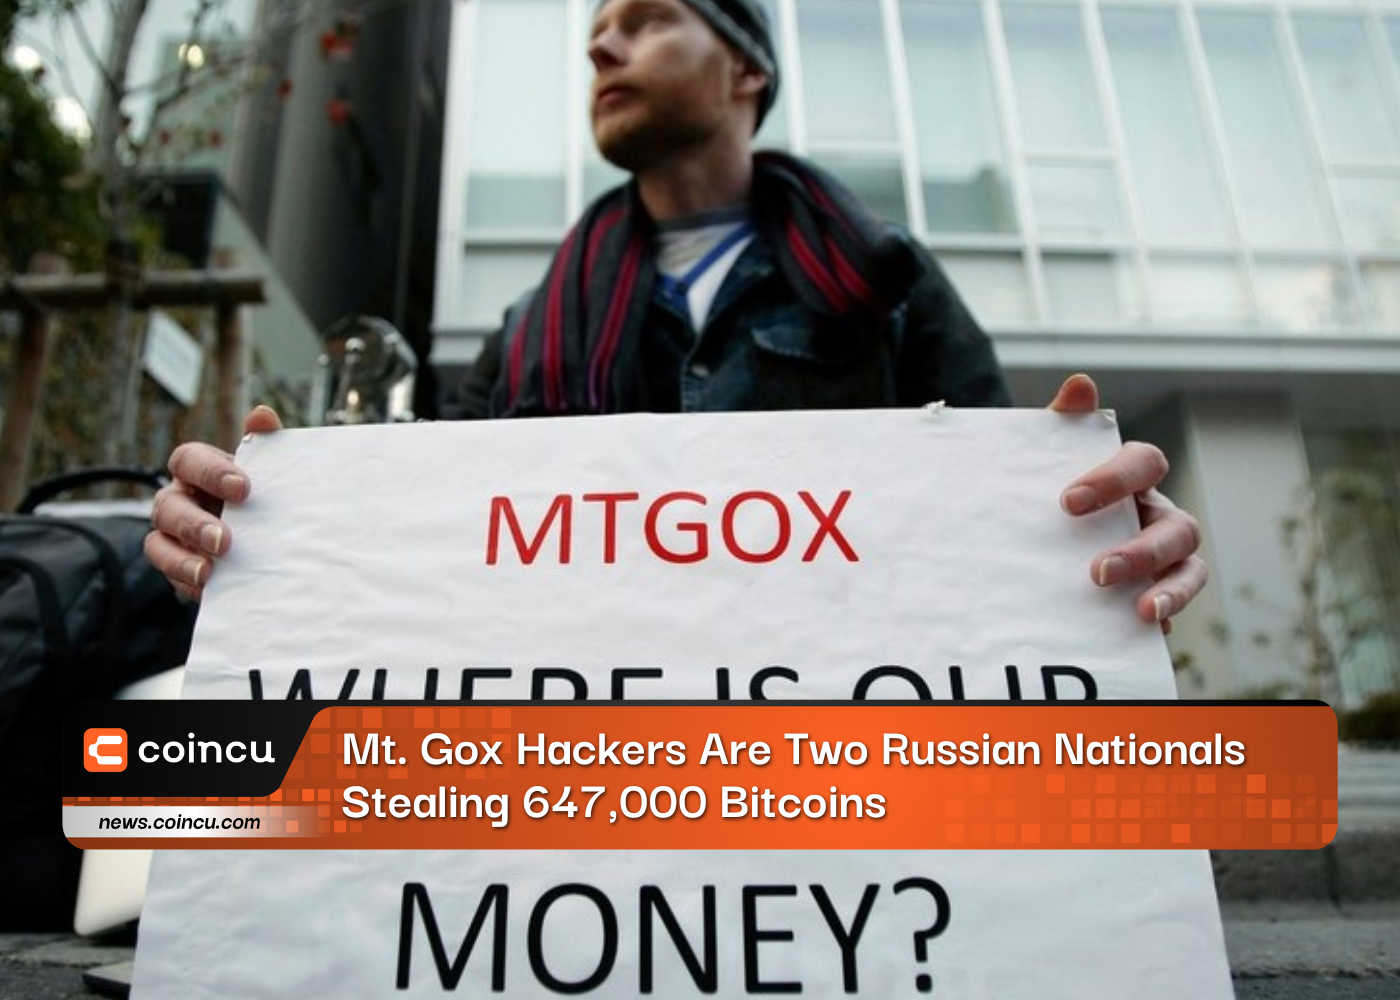 Los piratas informáticos de Mt. Gox son dos ciudadanos rusos que roban 647,000 Bitcoins